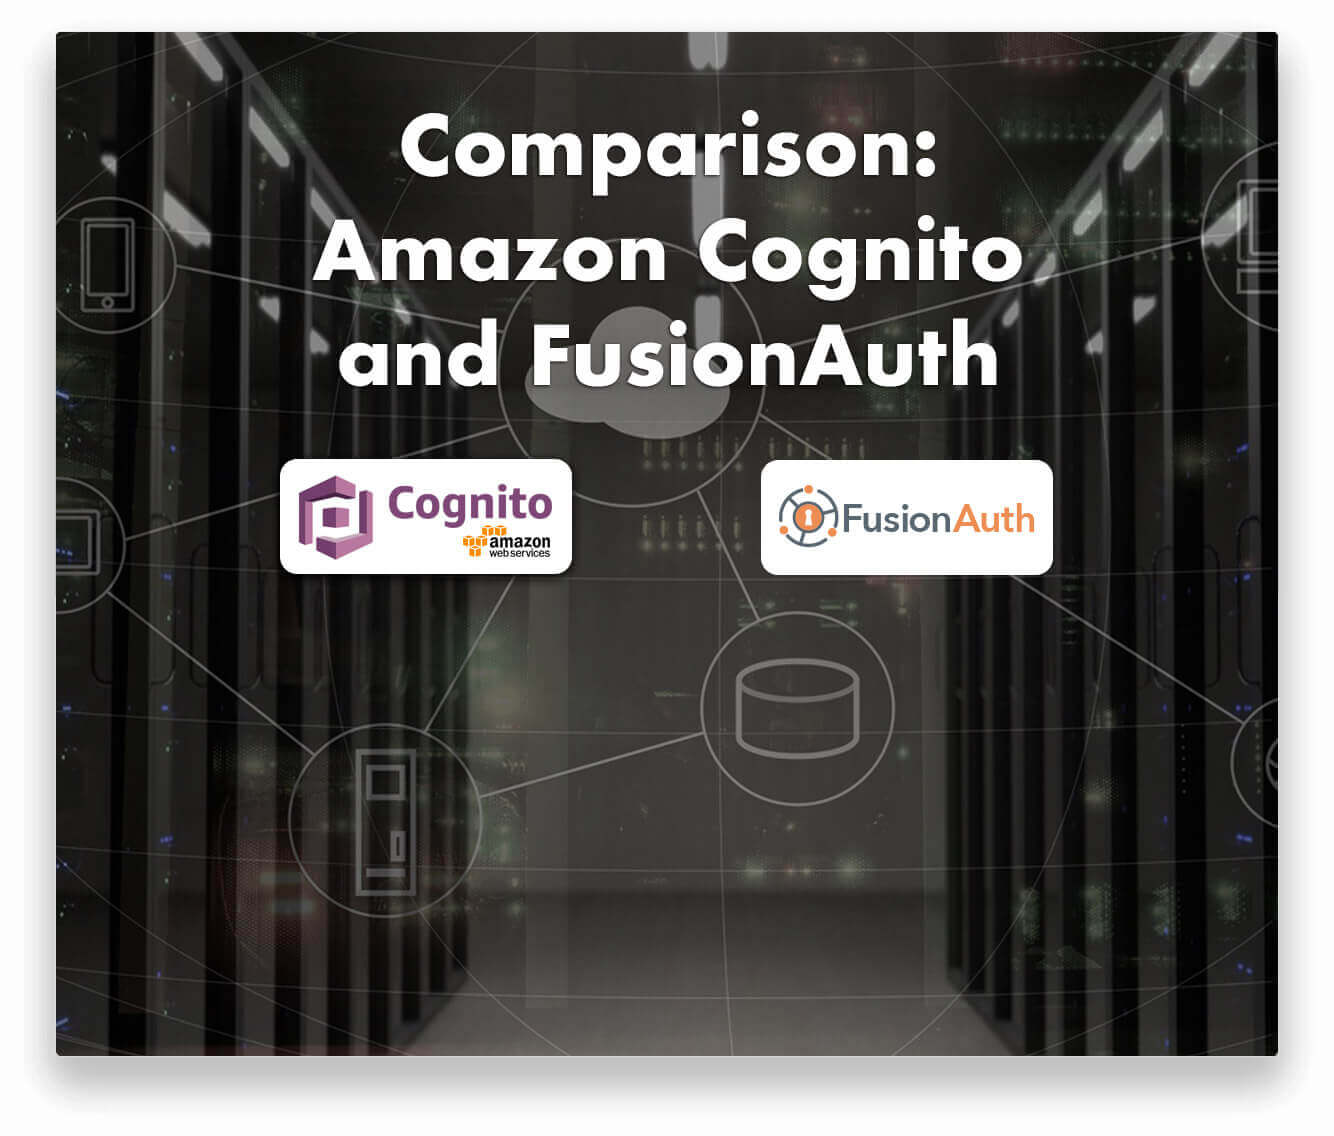 Amazon Cognito and FusionAuth Comparison